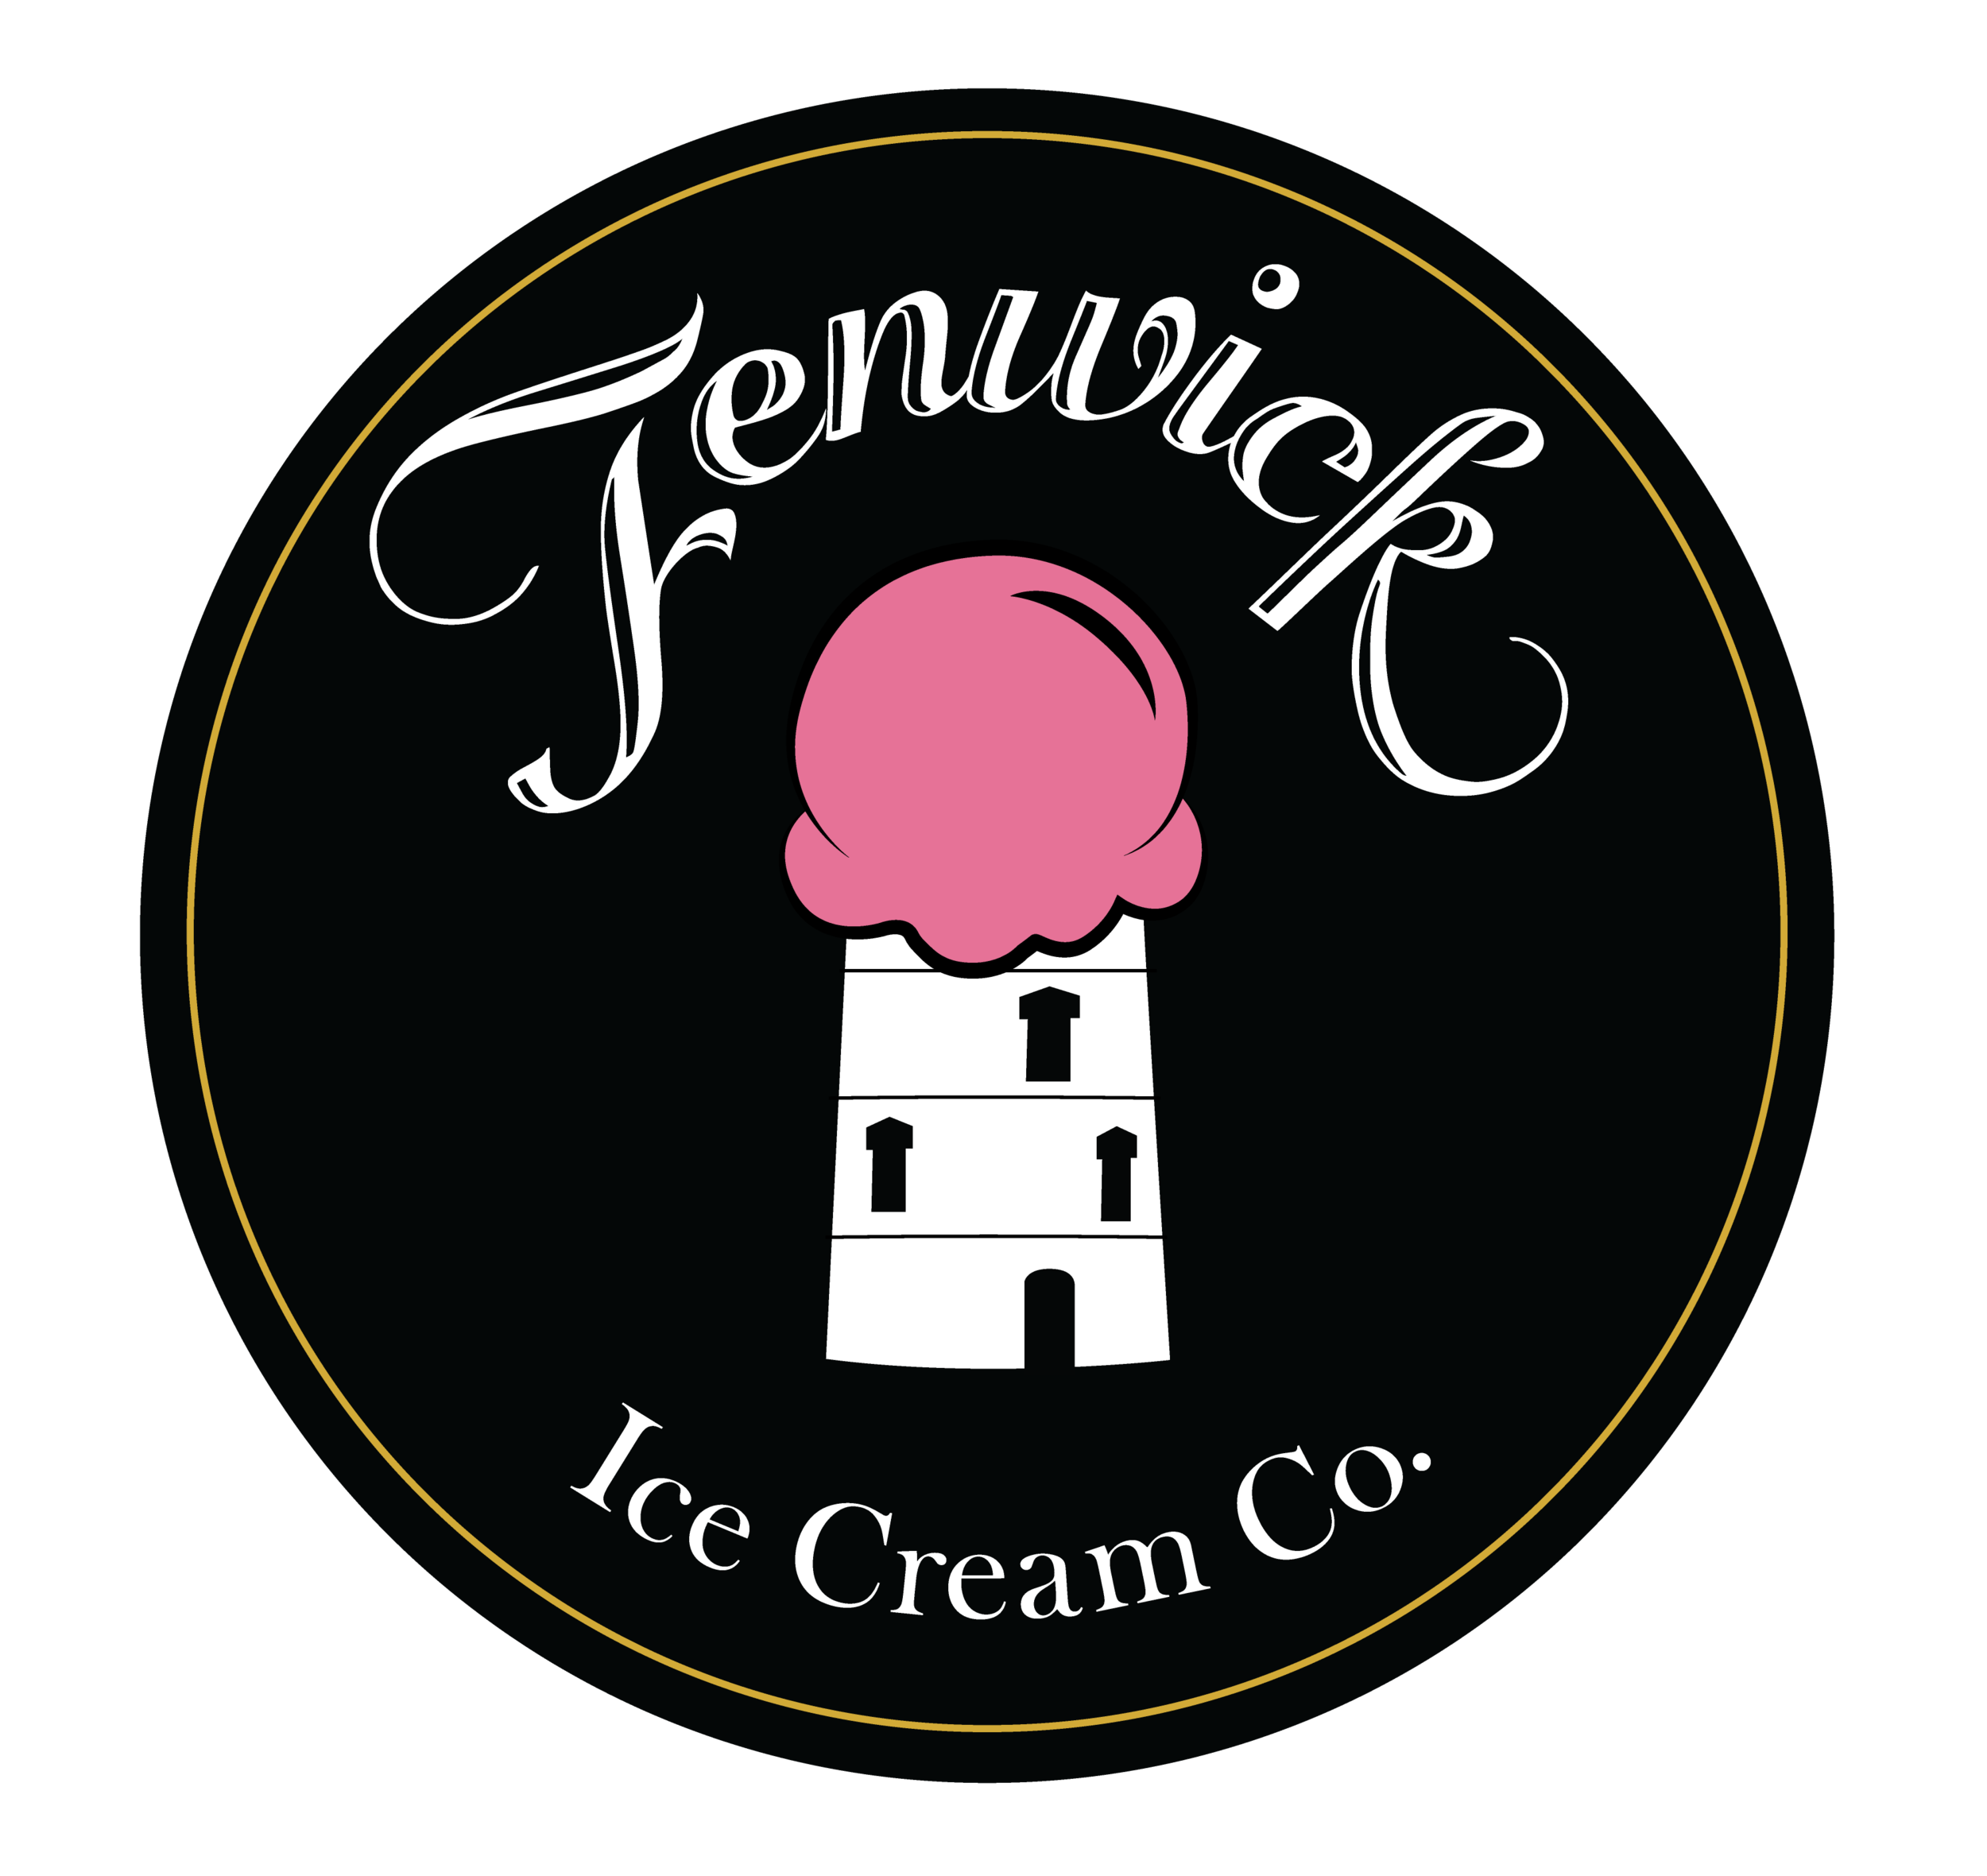 Fenwick Ice Cream Co.